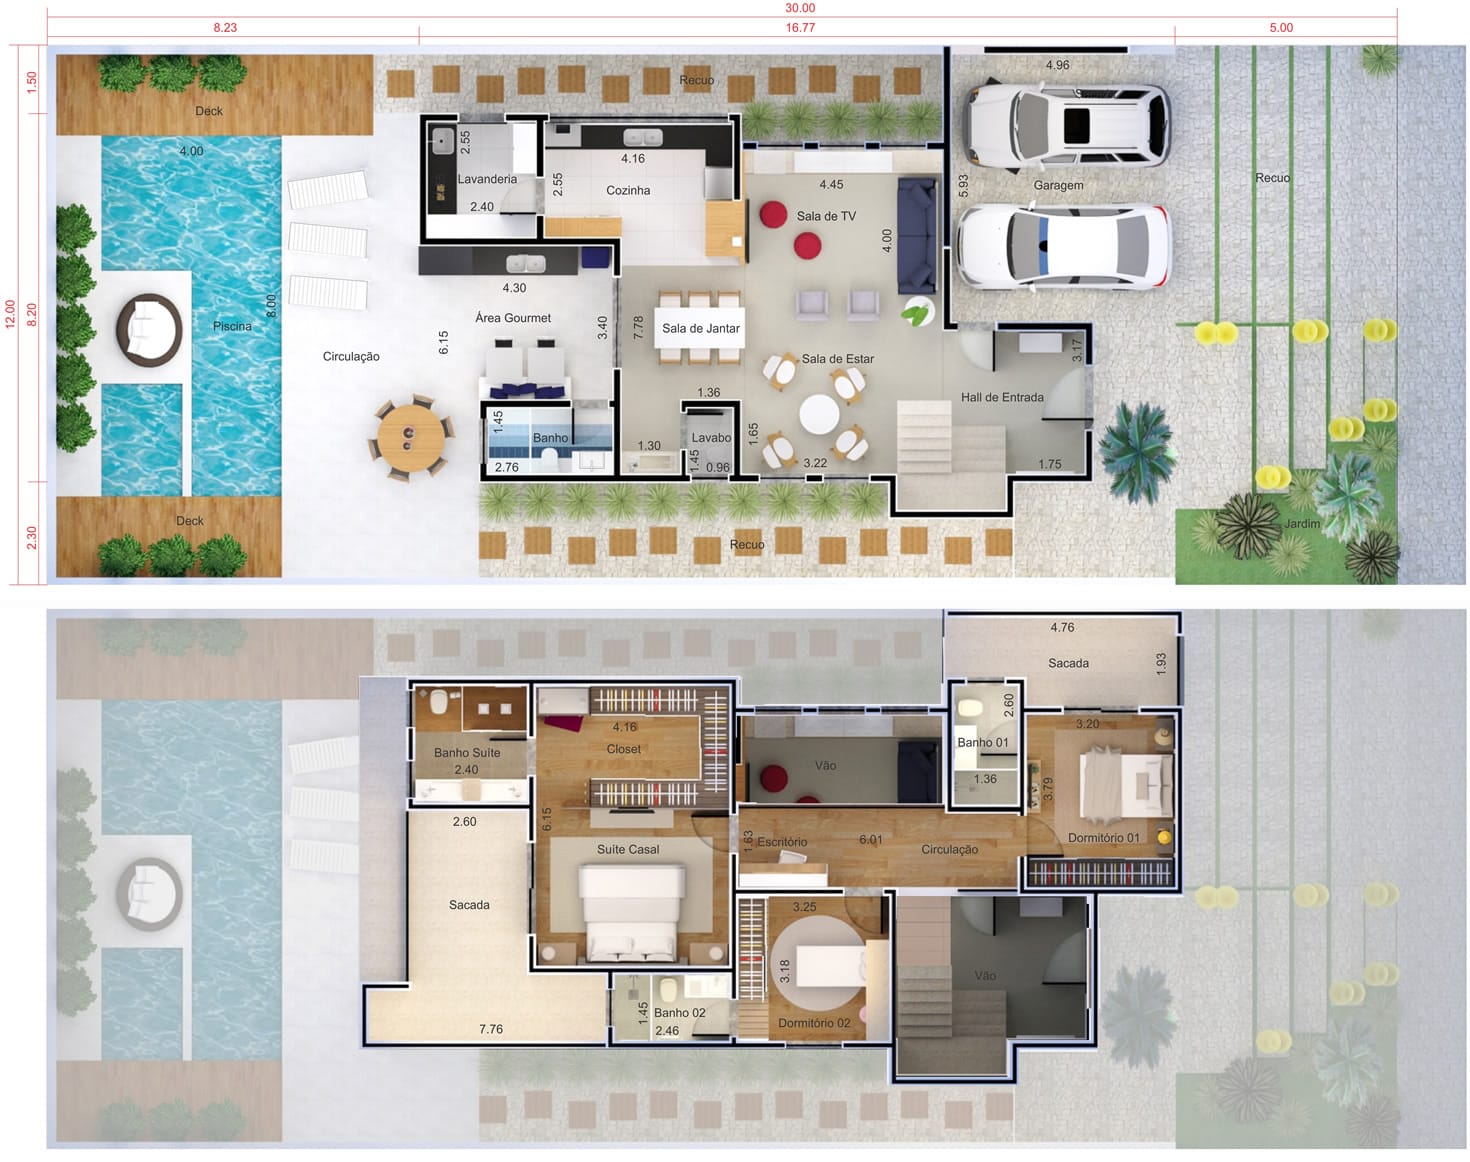 Floor plan with 3 suites12x30